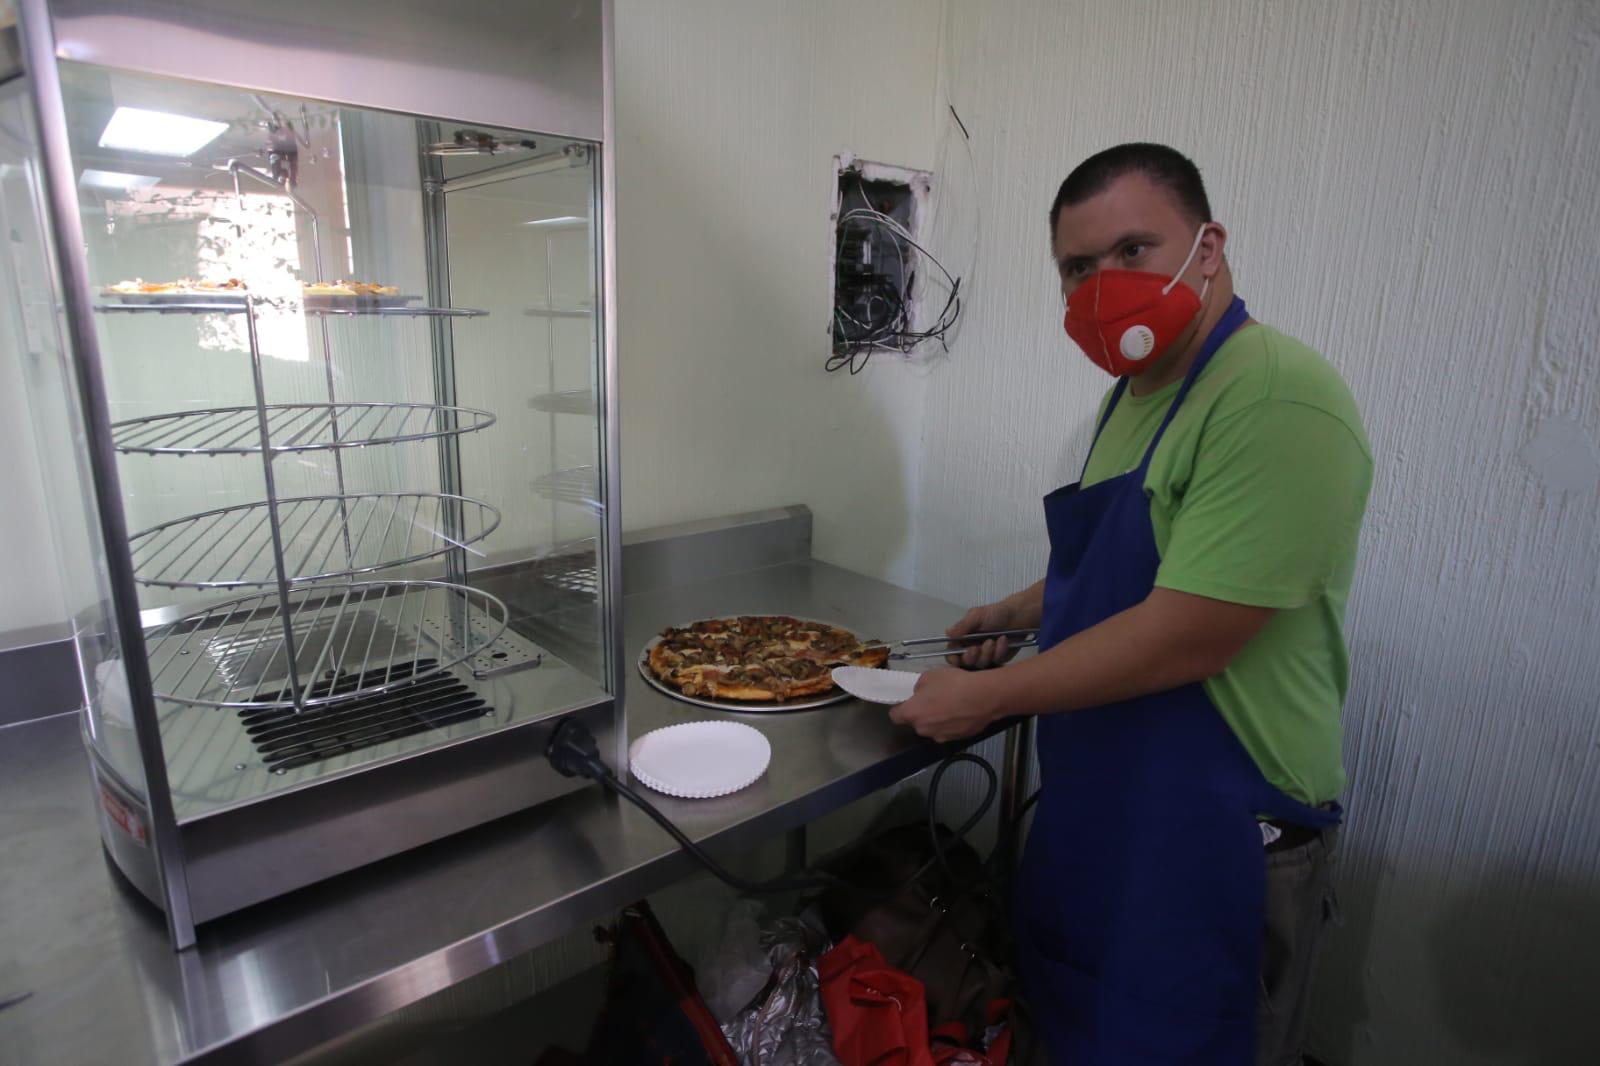 $!Pizzas Down, nuevo proyecto que impulsa la vida útil de personas con capacidades diferentes